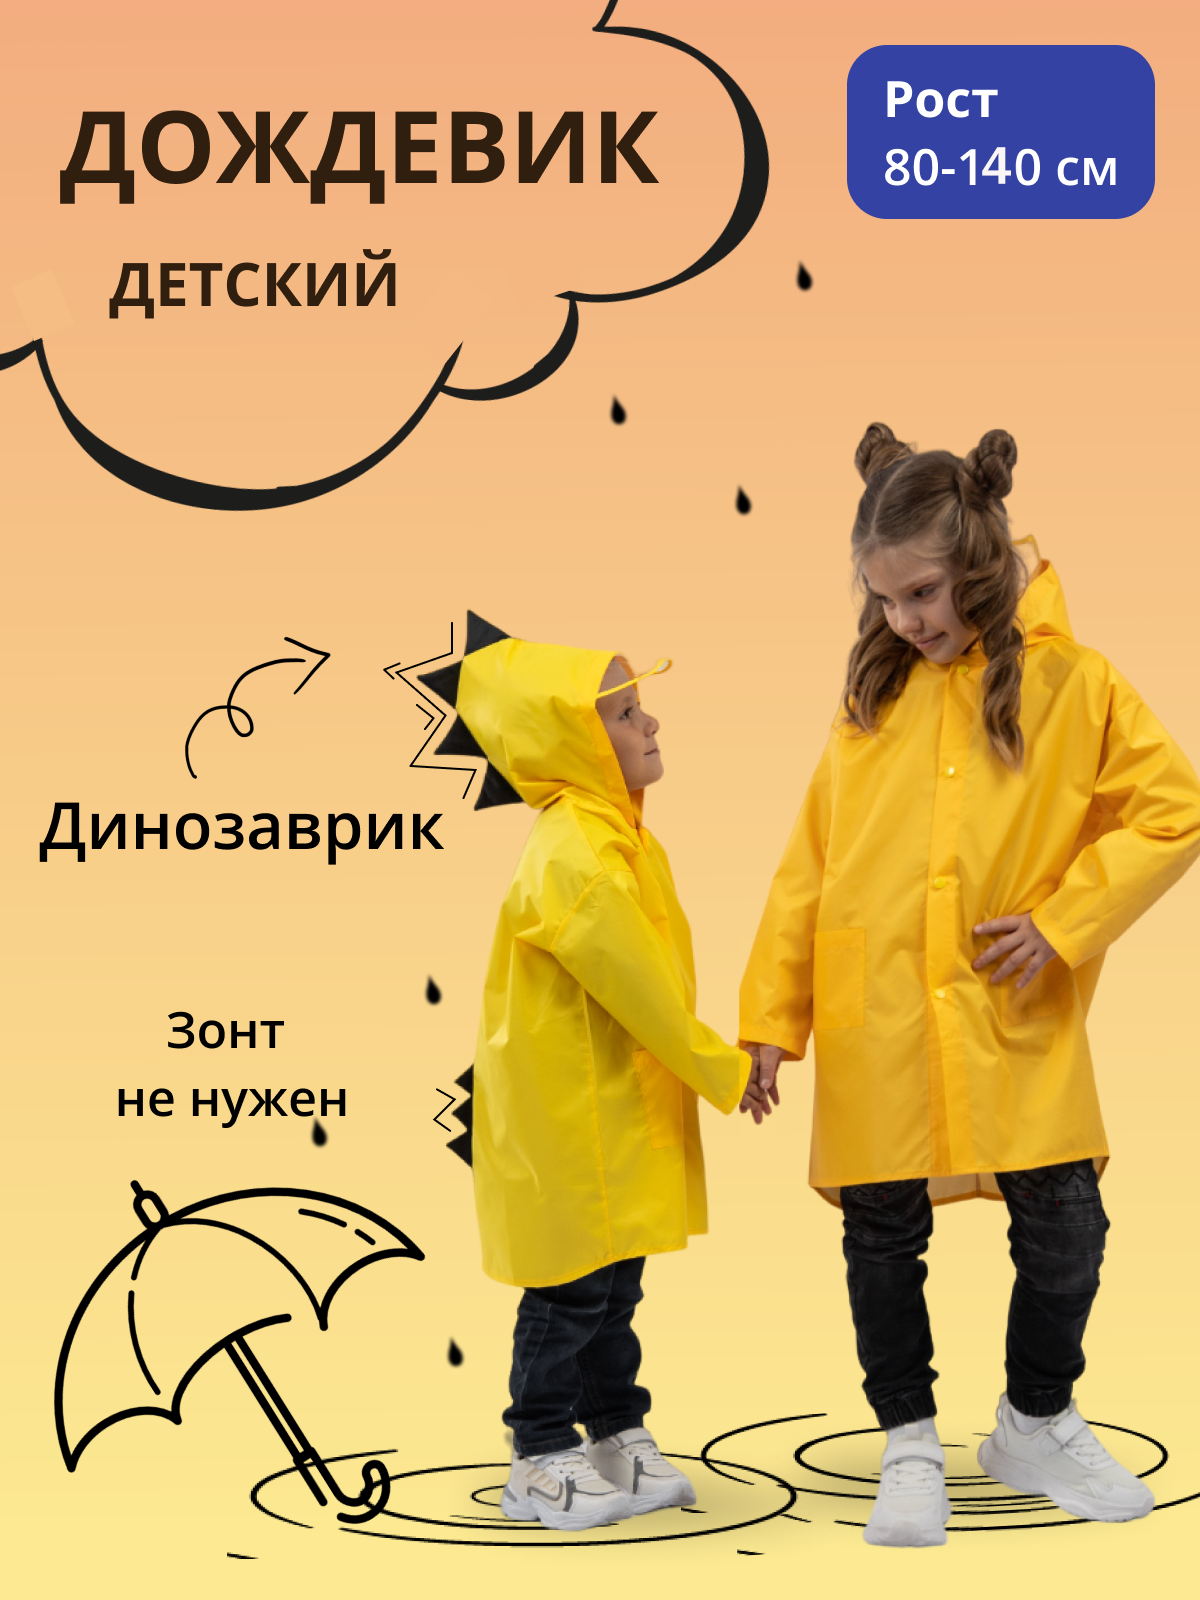 Дождевик детский Под дождем 122855956, желтый, 80 дождевик детский под дождем 122855956 желтый 92